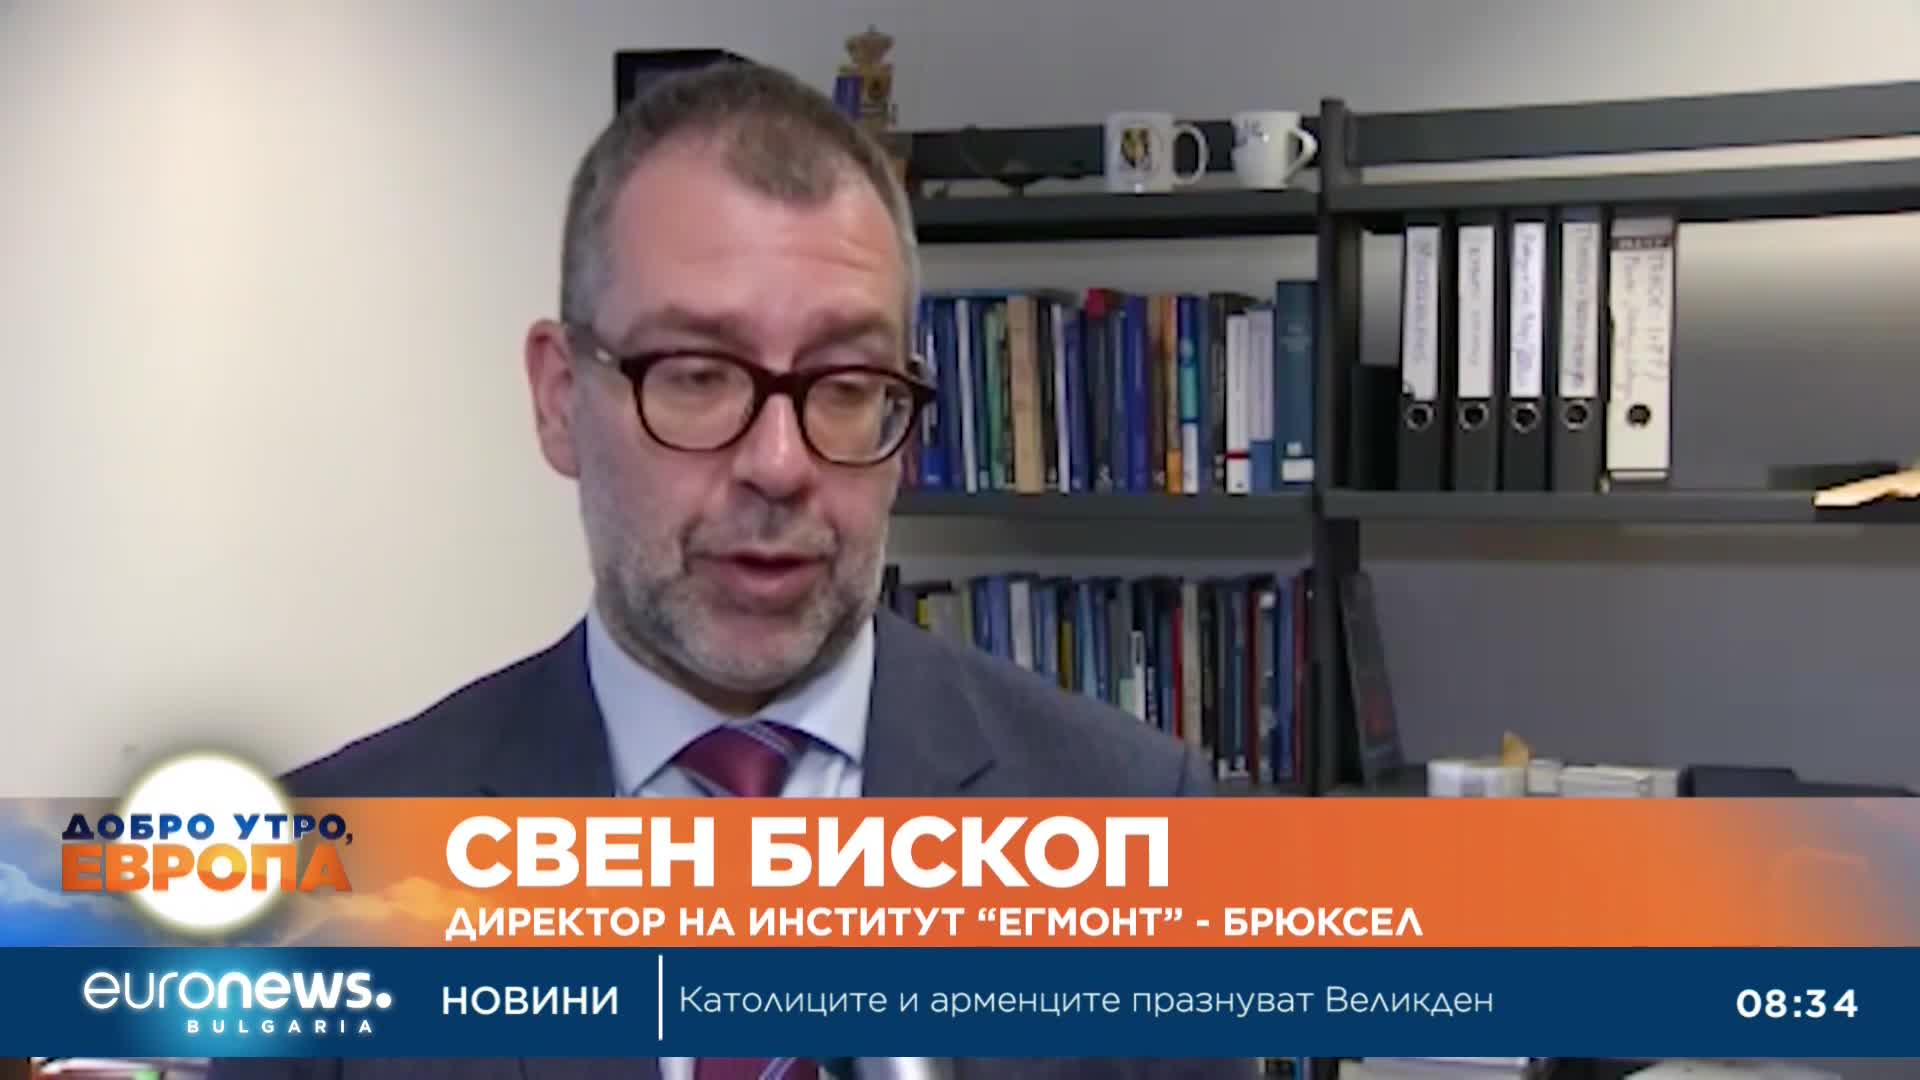 Проучване на Euronews: Над 70% от европейците смятат, че е важно да се помага на Украйна